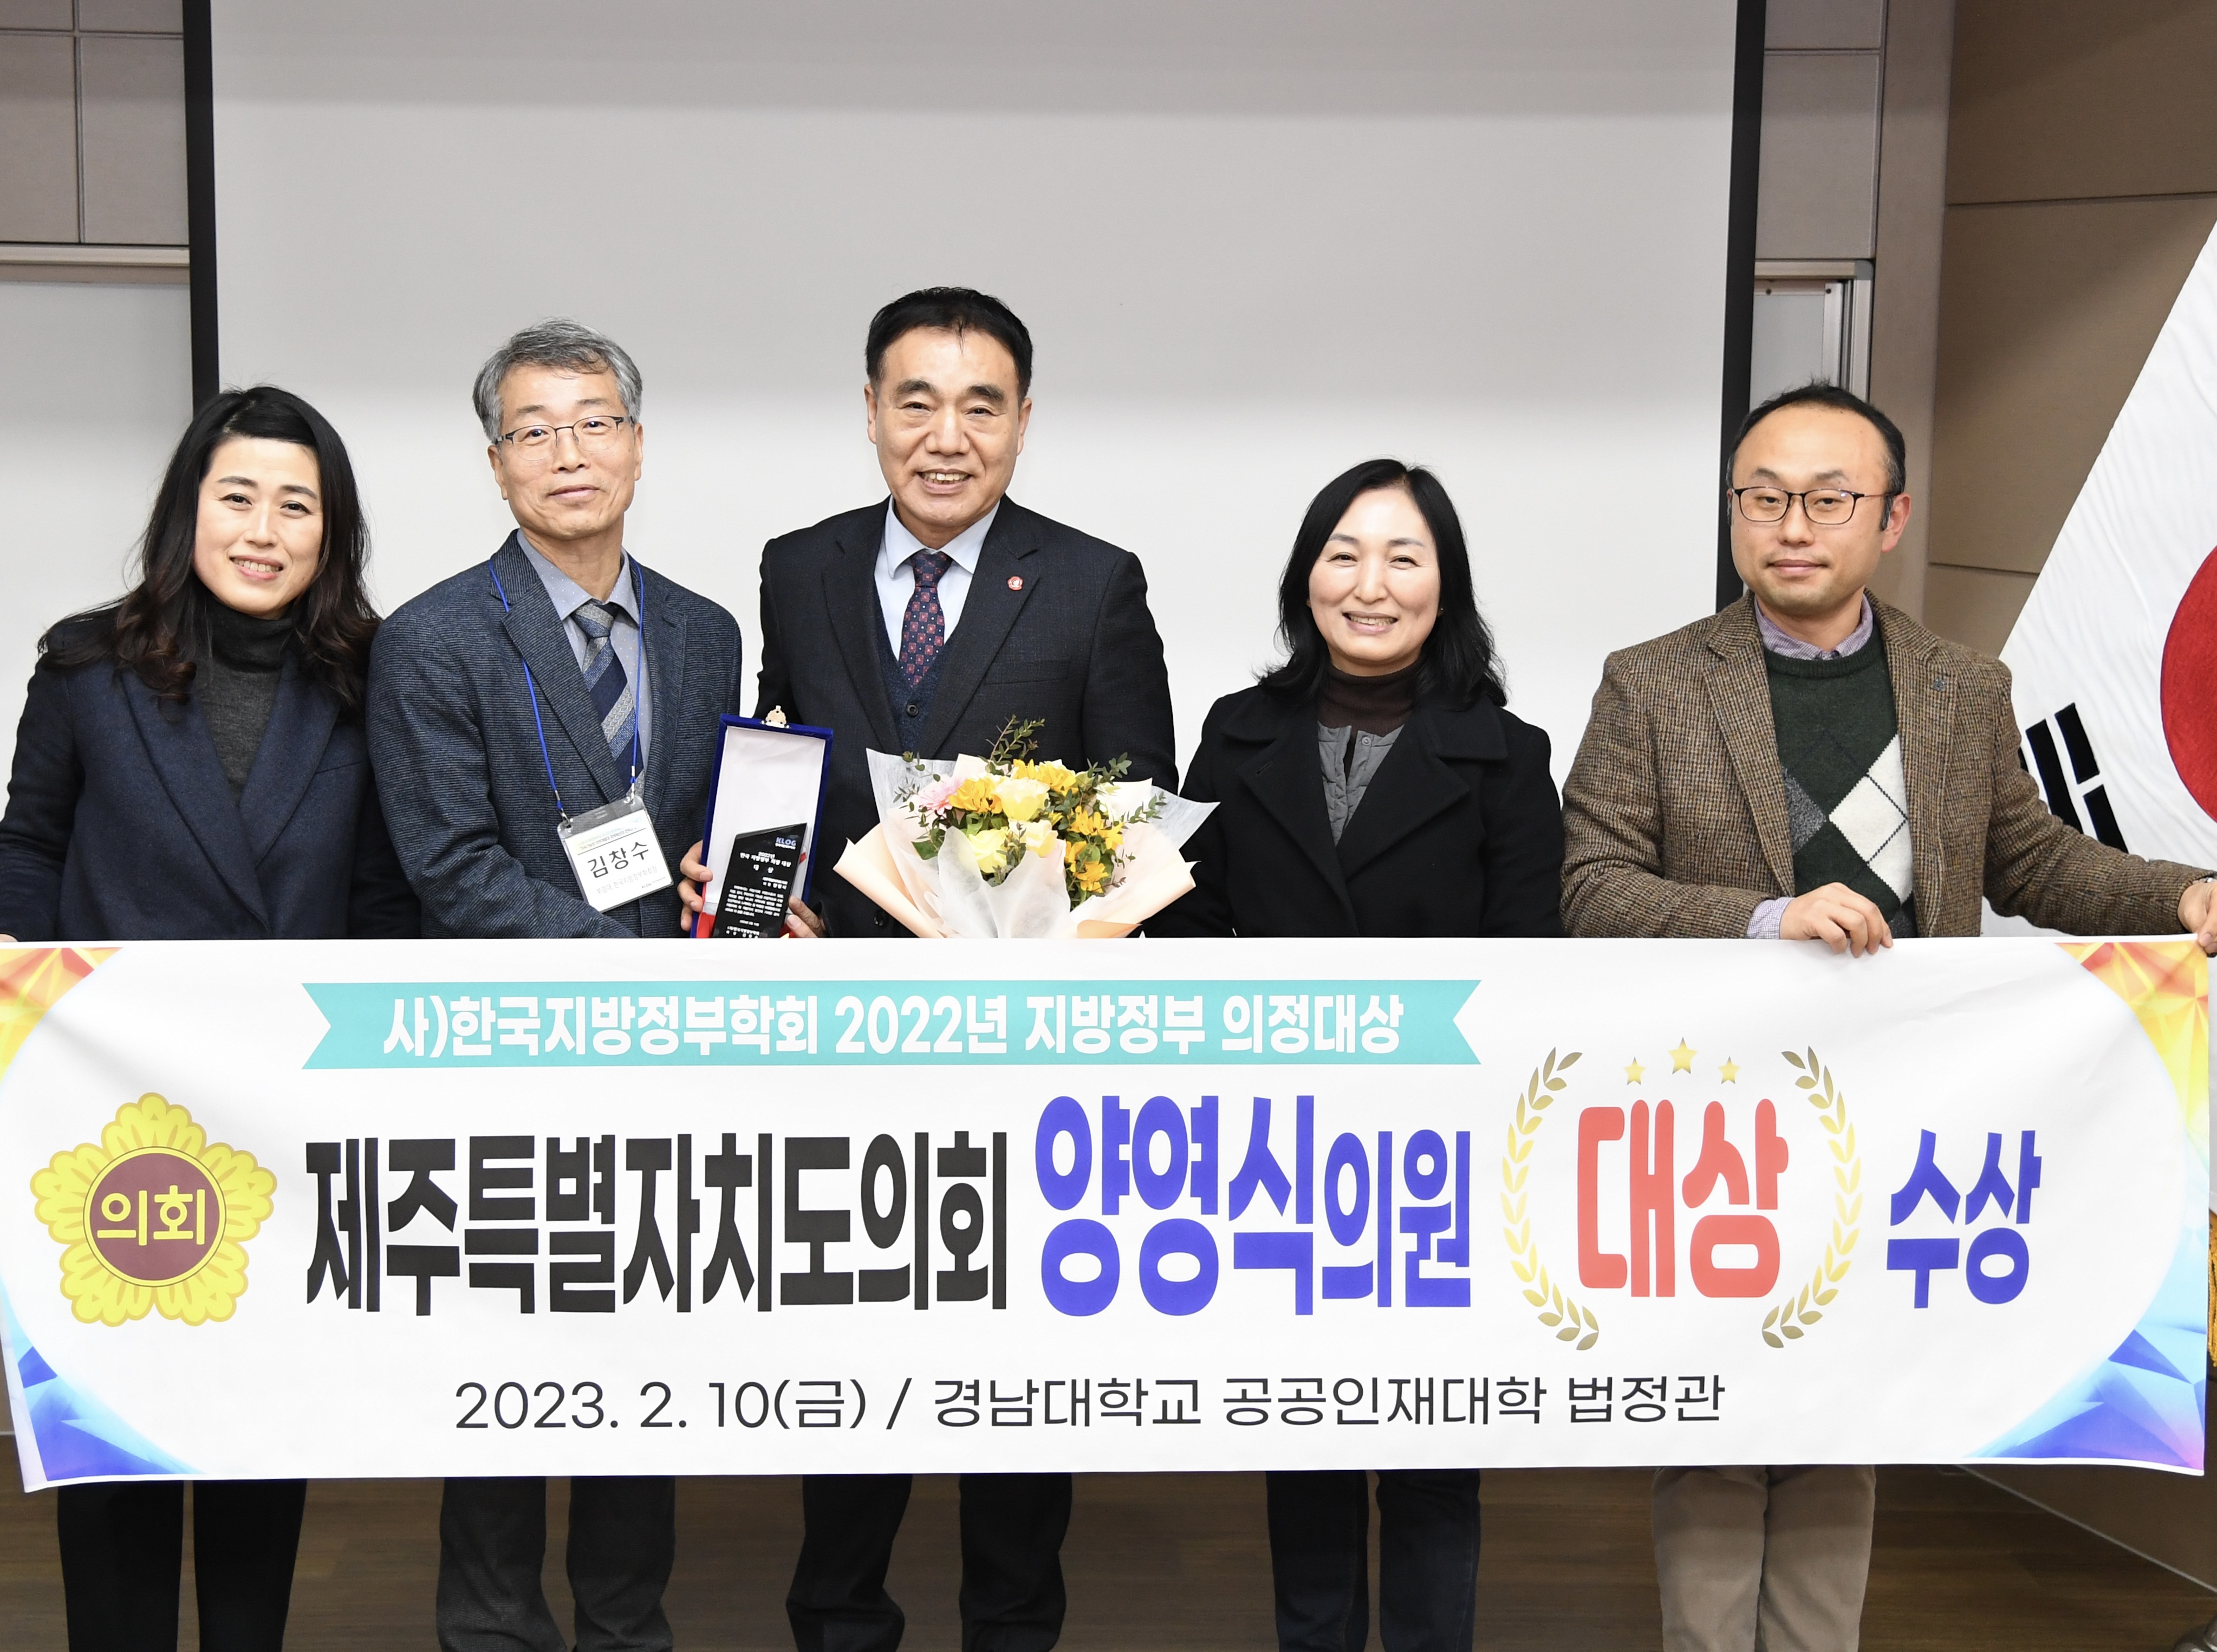 사)한국지방정부학회 선정, 2022년 지방정부 의정대상 - 양영식 의원, ‘대상’ 수상